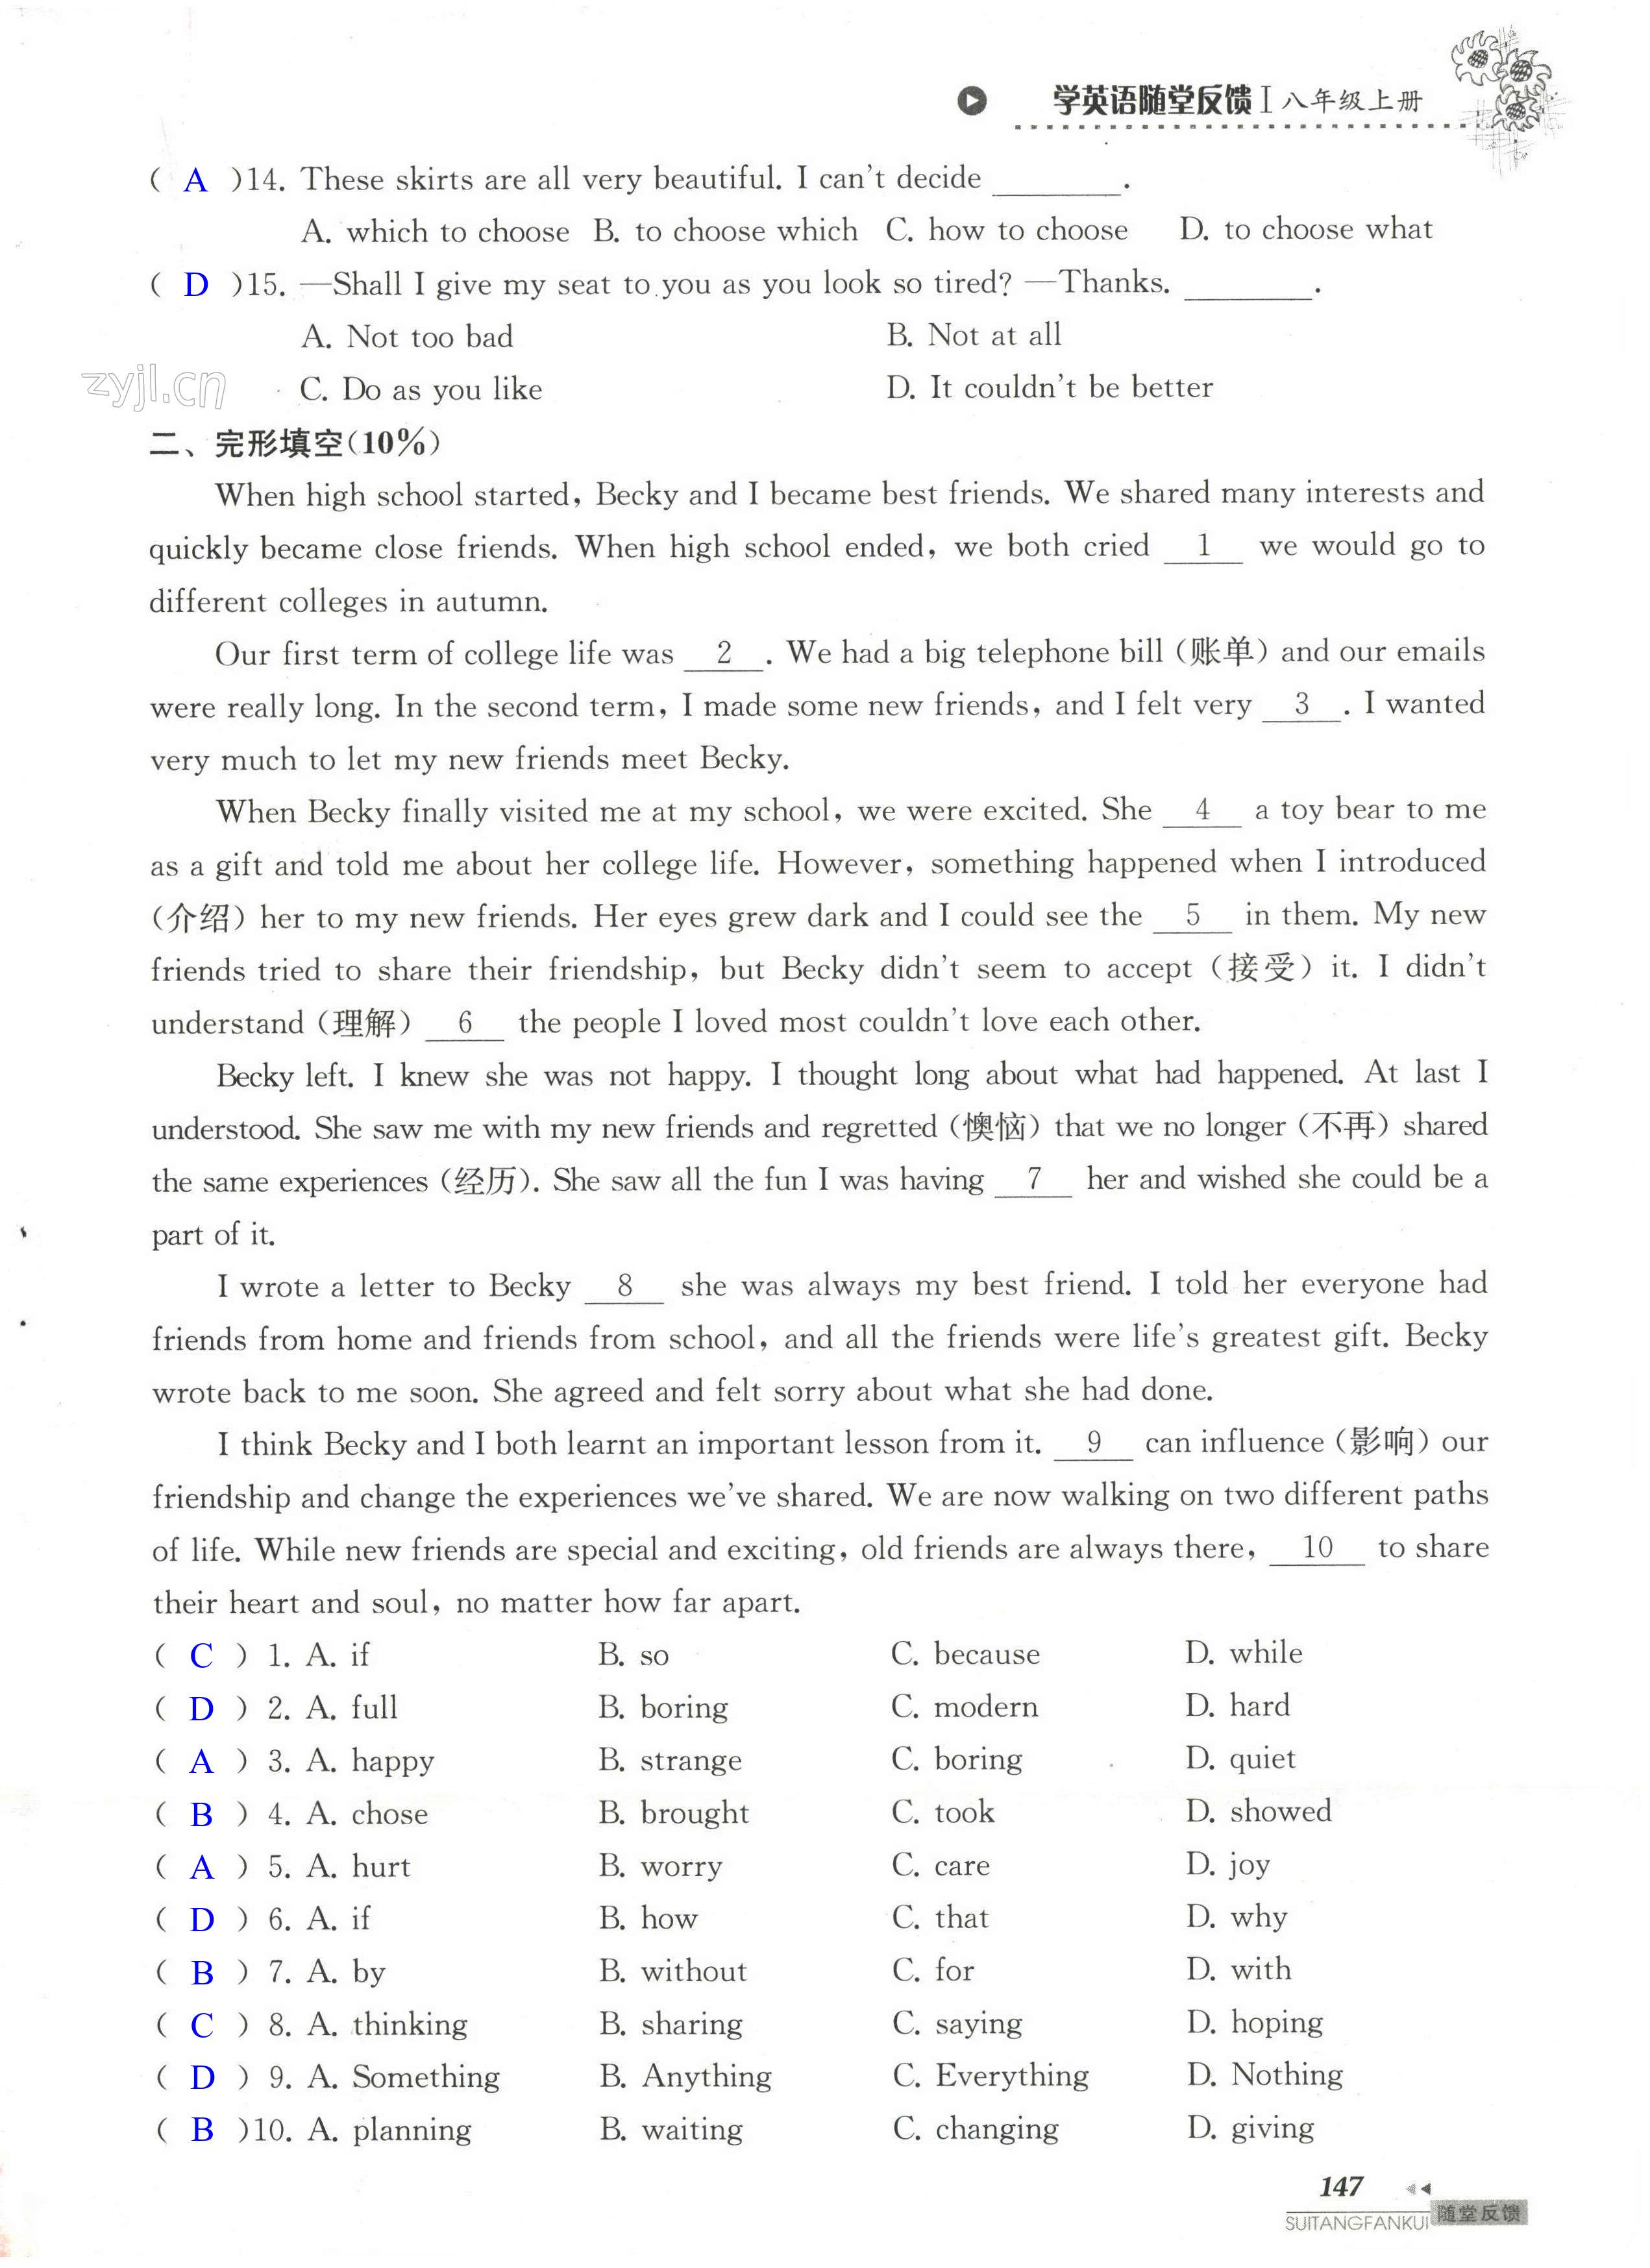 单元综合测试卷 Test for Unit 1 of 8A - 第147页